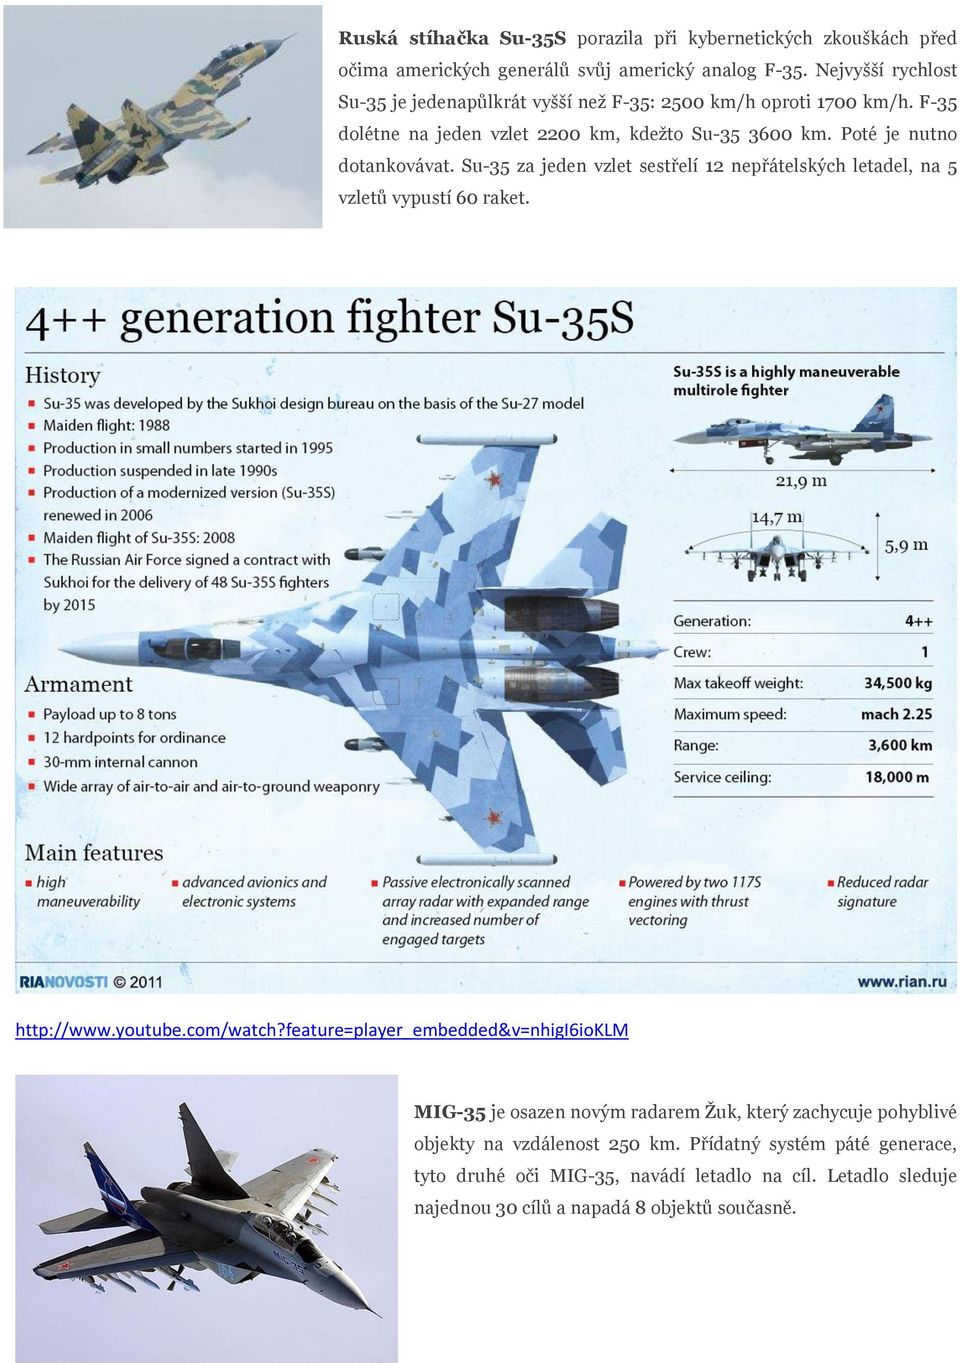 Poté je nutno dotankovávat. Su-35 za jeden vzlet sestřelí 12 nepřátelských letadel, na 5 vzletů vypustí 60 raket. http://www.youtube.com/watch?